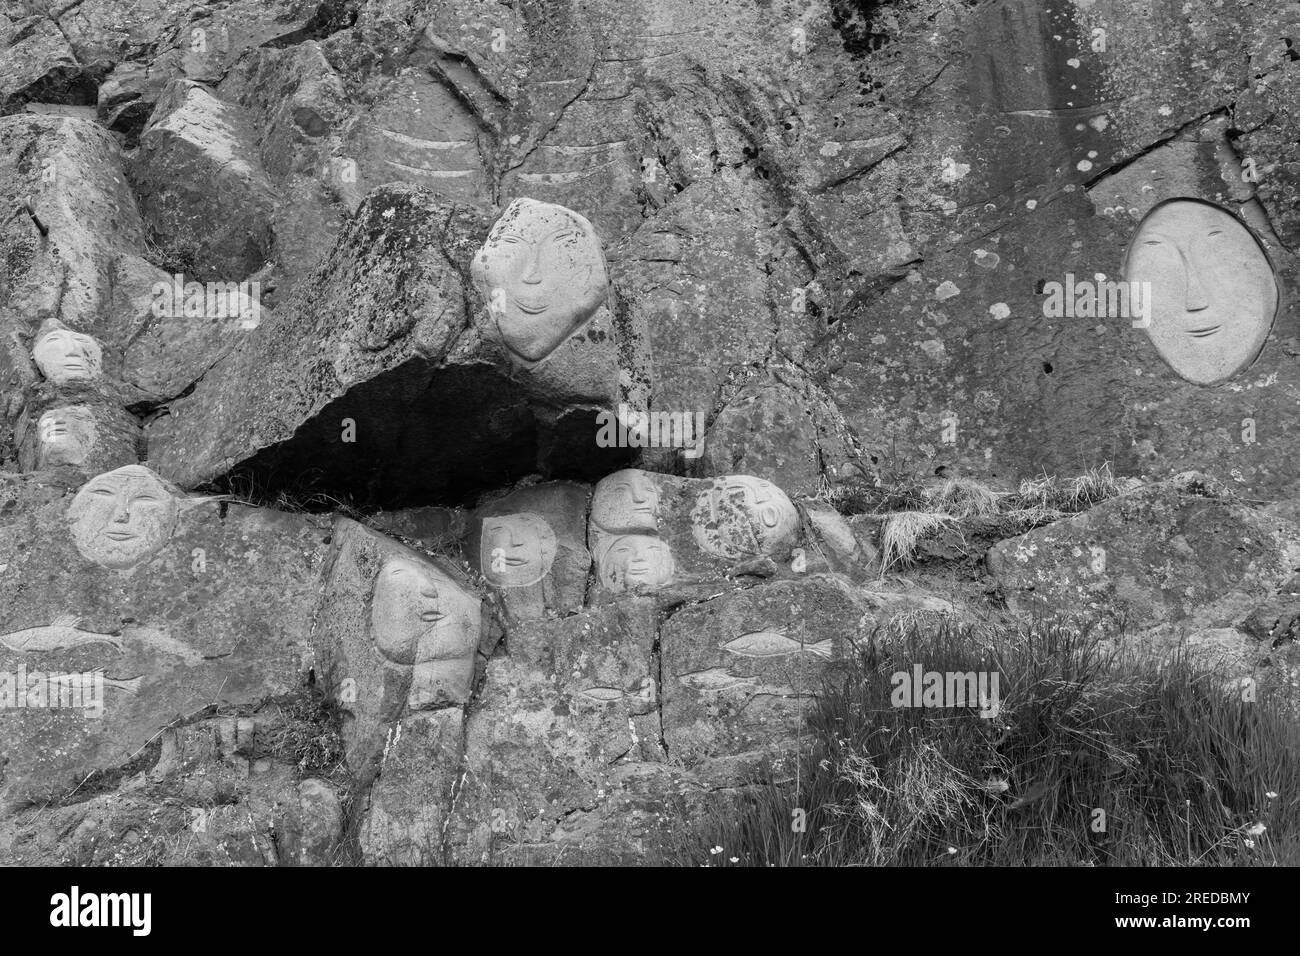 Visages, sculptures rupestres, dans le cadre du projet Stone & Man de l'artiste local aka Høegh à Qaqortoq, Groenland en juillet - monochrome, noir et blanc Banque D'Images